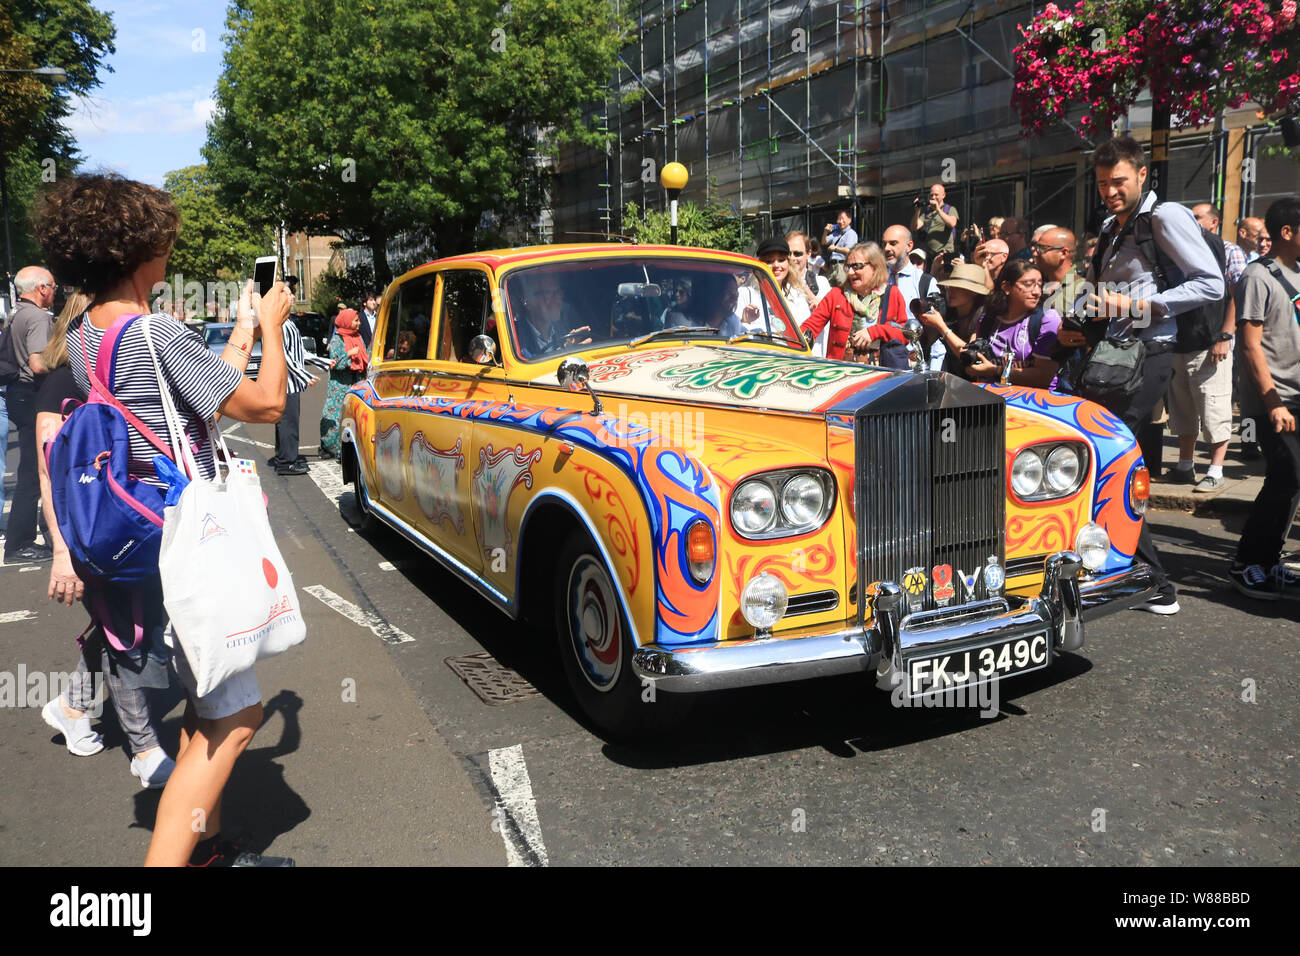 London UK. 8 août 2019. Beatles fans cheer comme une Rolls Royce avec décorations psychadelic arrive sur le 50e anniversaire de l'album Abbey Road sorti le 8 août 1969.Crédit : amer ghazzal/Alamy Live News Banque D'Images